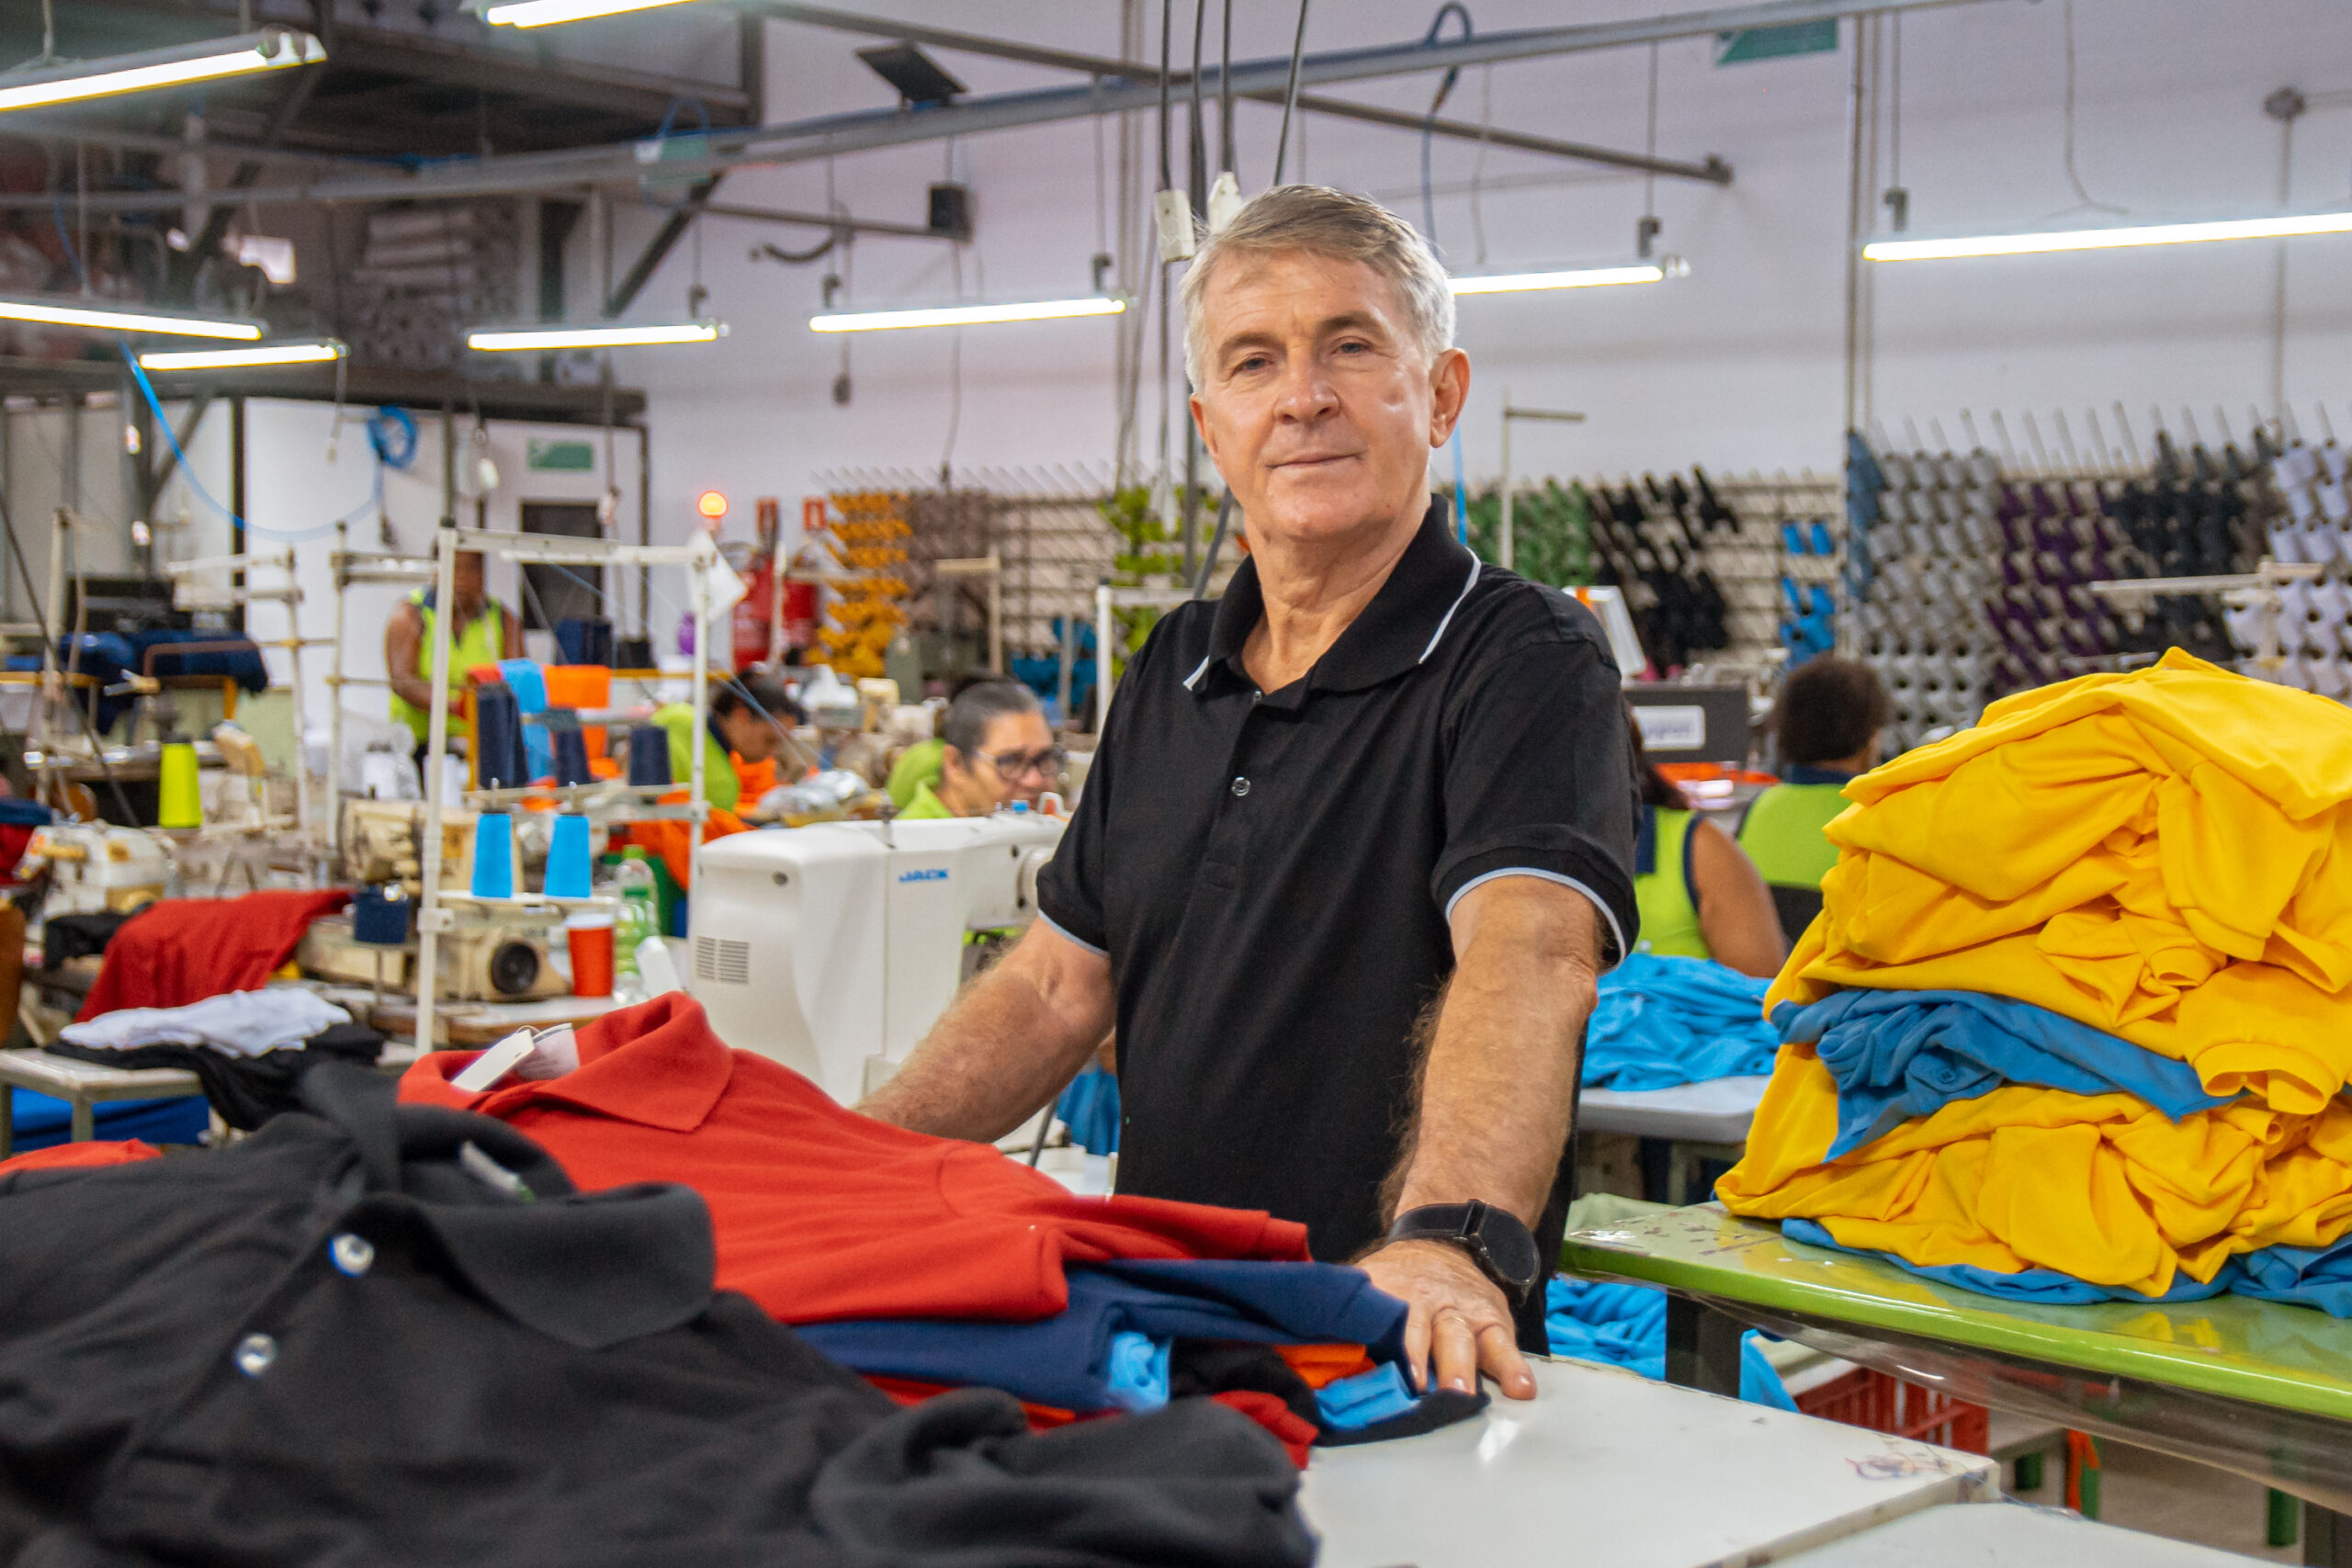 Em Salvador a indústria têxtil Polo Salvador, que produz camisas polo para uniformes corporativos, aplica mais de 40 ações sustentáveis no dia a dia da fábrica e algumas delas são voltadas especificamente para a economia e melhor aproveitamento da água.